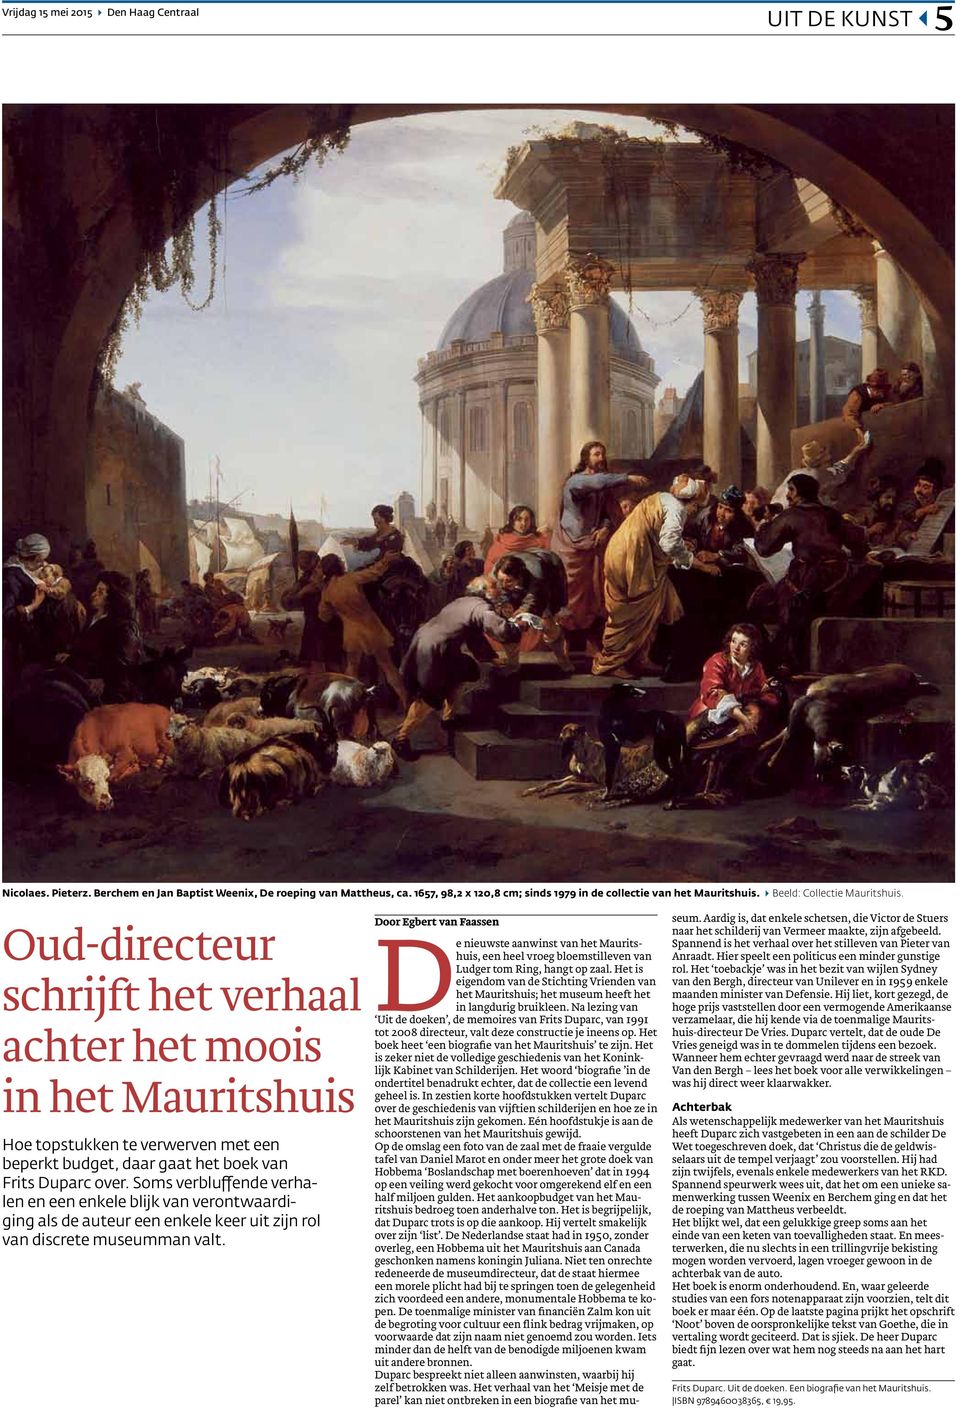 Oud-directeur schrijft het verhaal achter het moois in het Mauritshuis Hoe topstukken te verwerven met een beperkt budget, daar gaat het boek van Frits Duparc over.